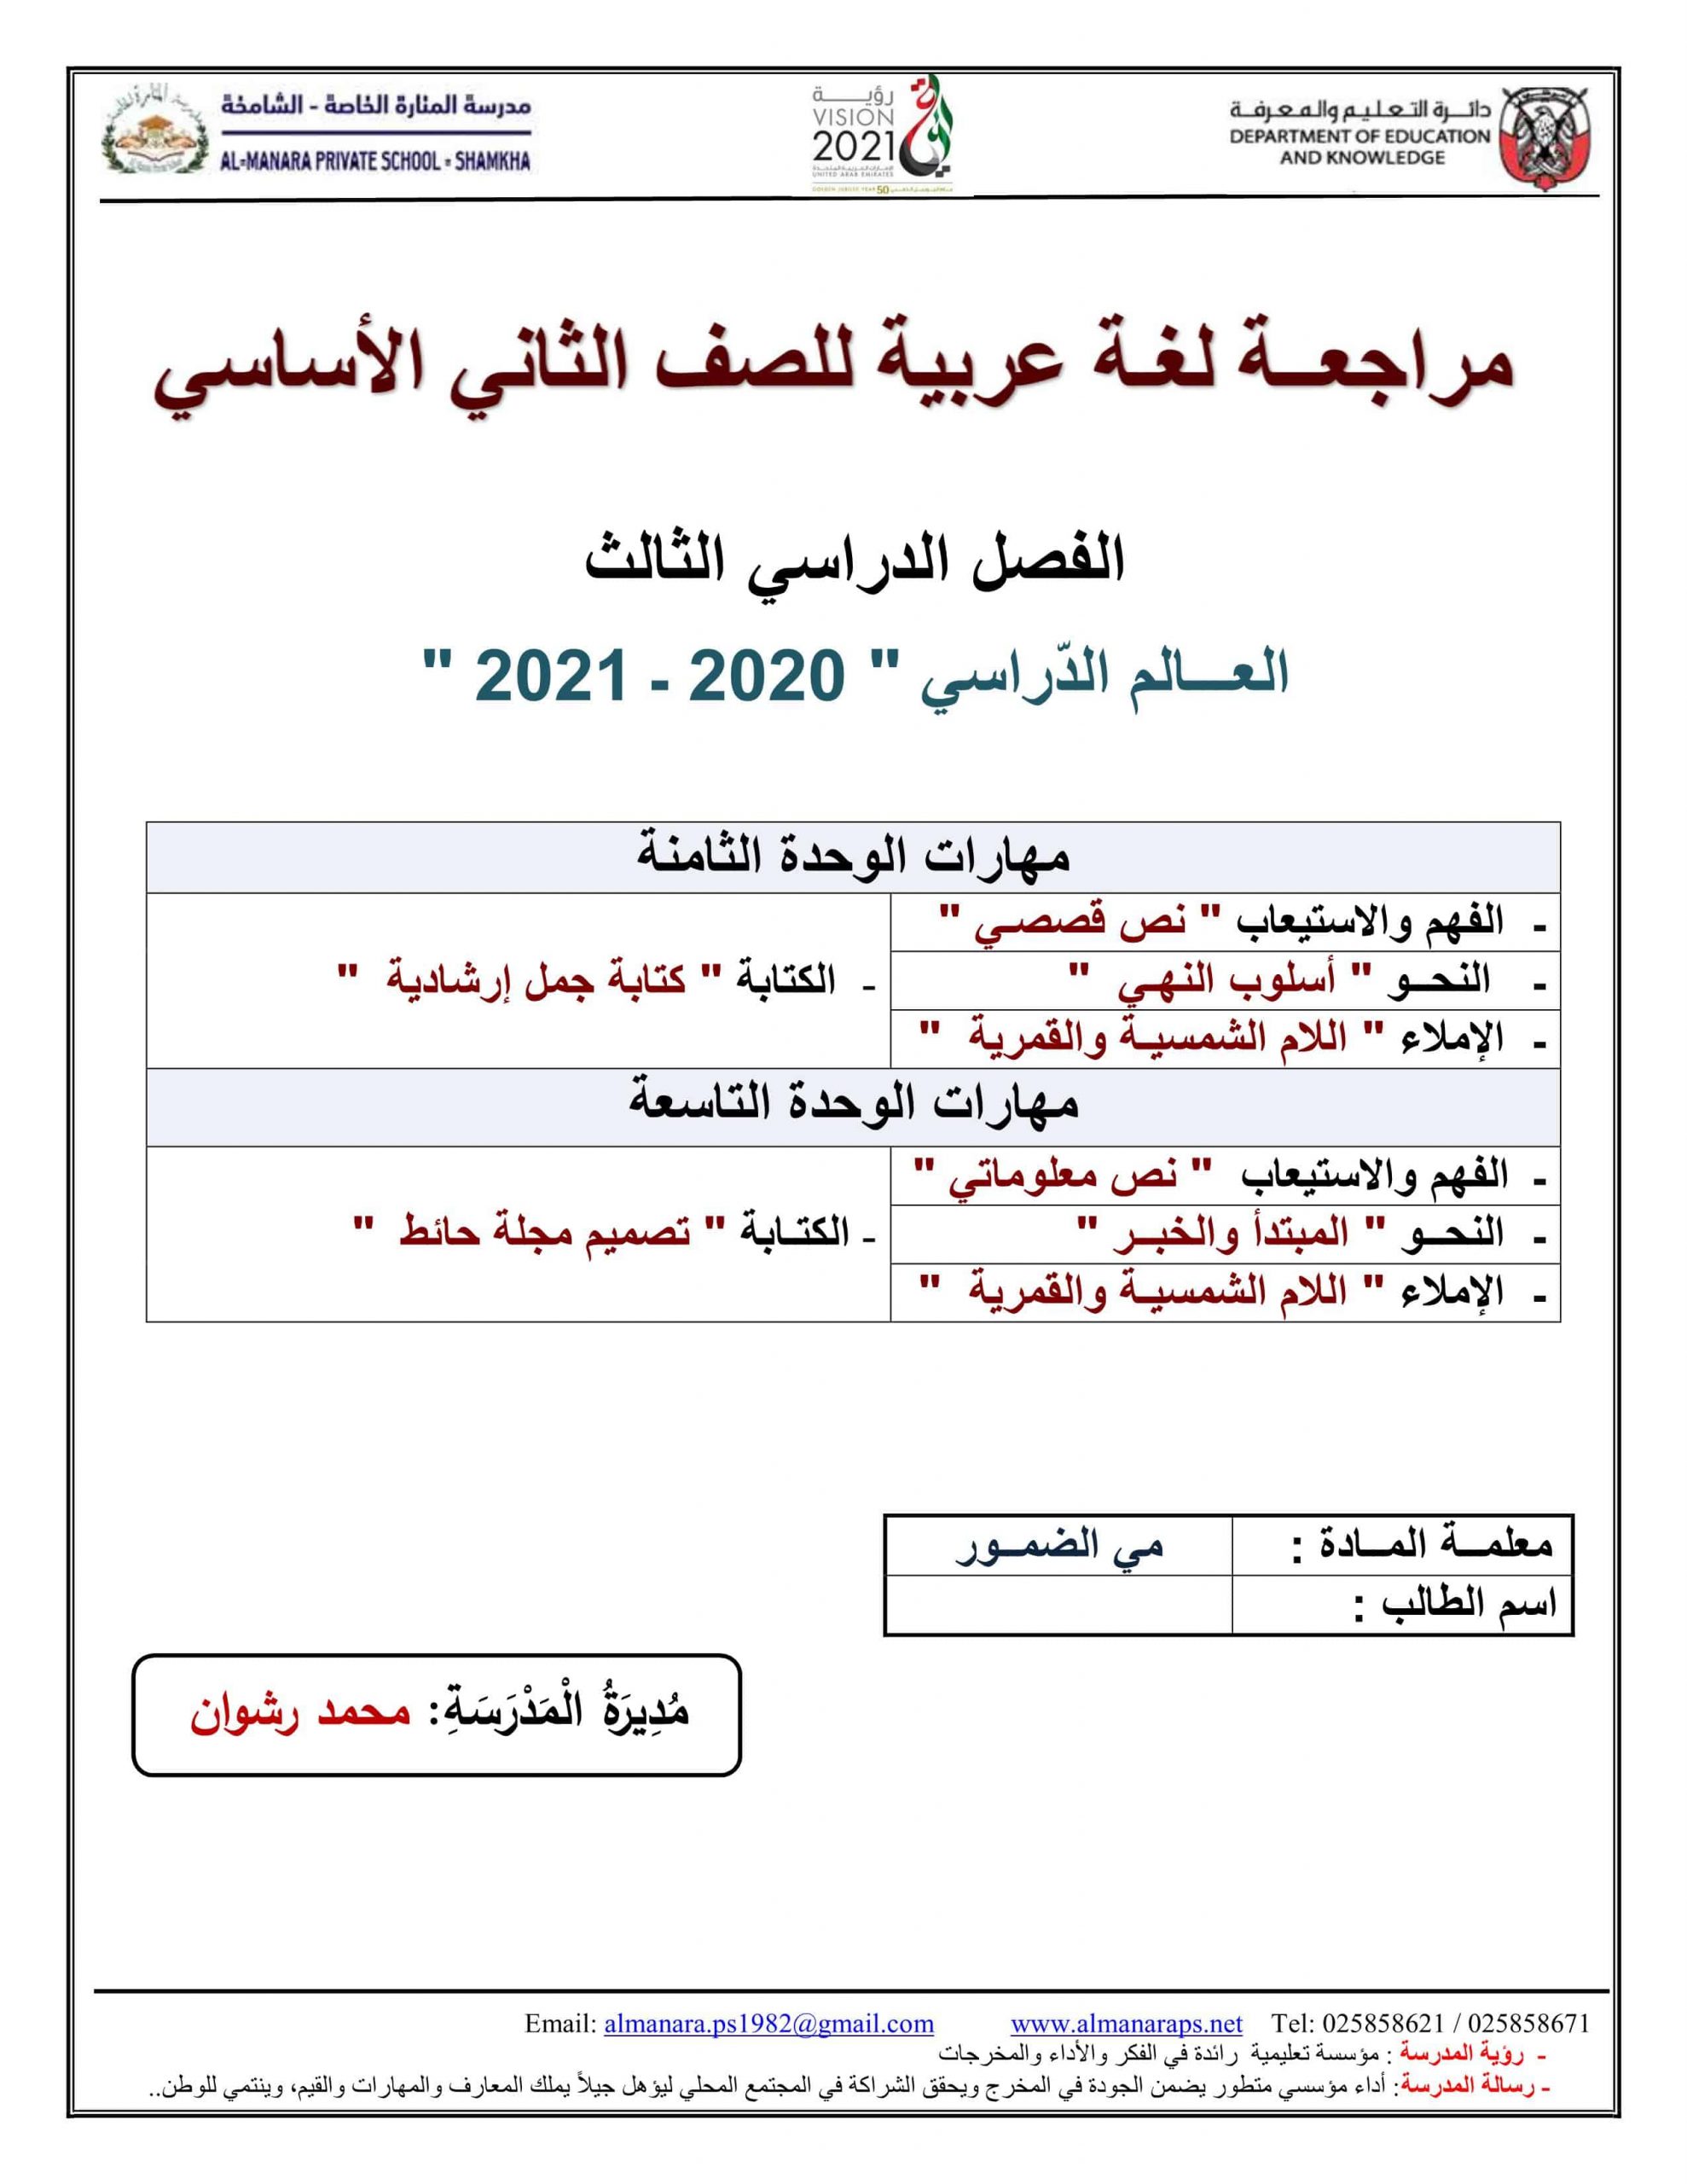 أوراق عمل مراجعة شاملة الفصل الدراسي الثالث الصف الثاني مادة اللغة العربية